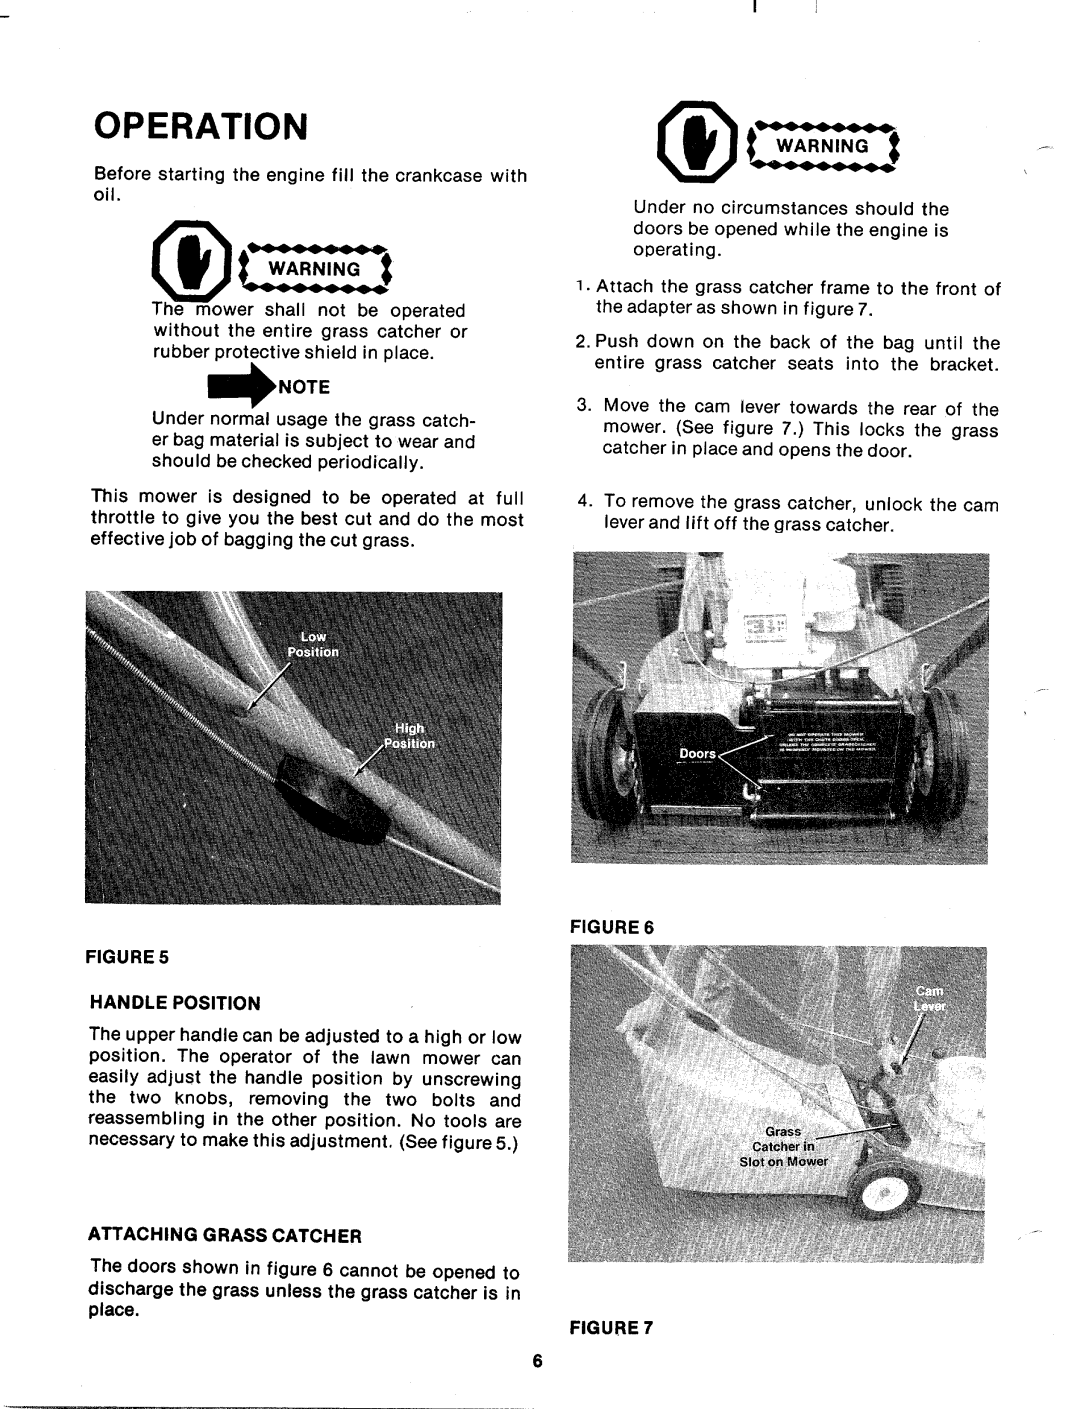 MTD 128-336A manual 